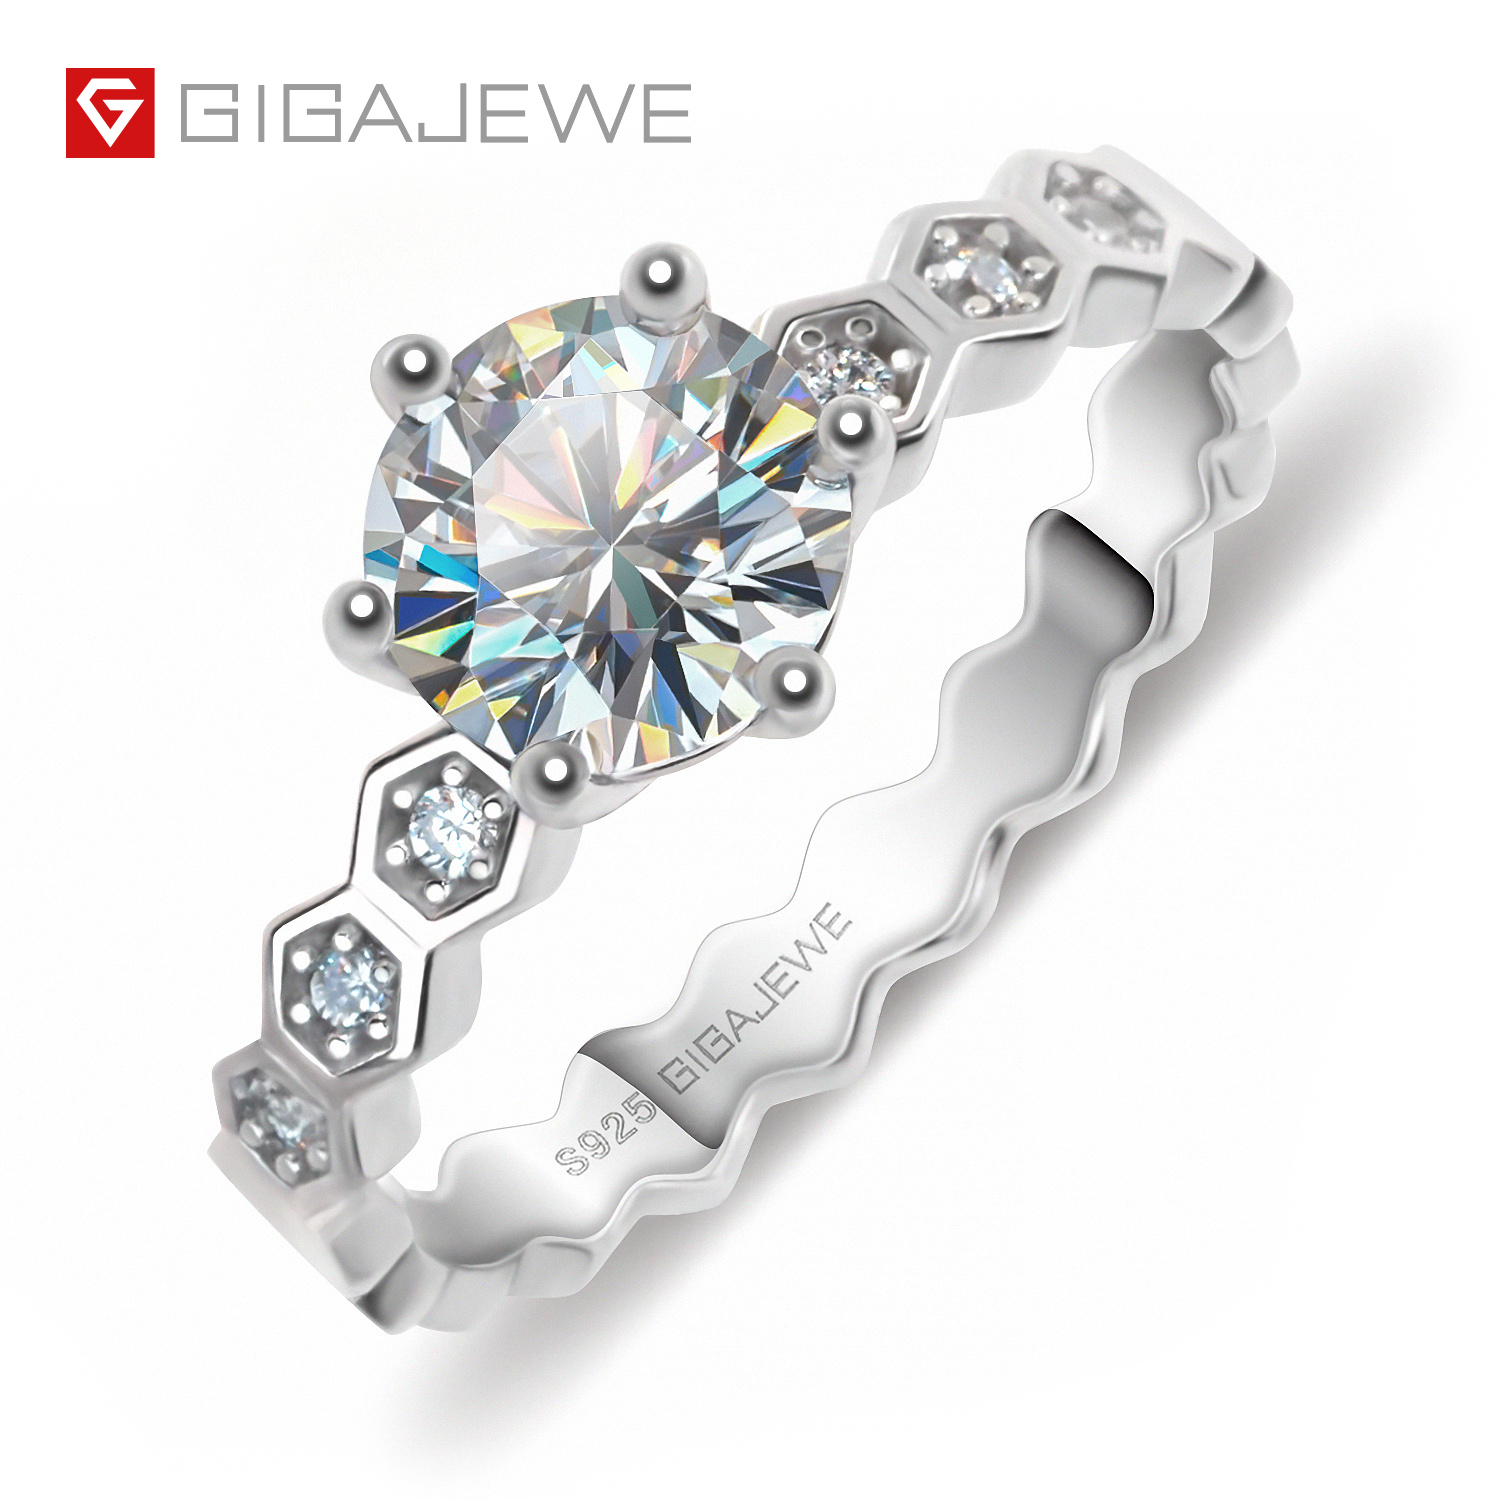 GIGAJEWE 1.0 克拉 6.5 毫米 EF 圆形 18K 白金镀 925 银莫桑石戒指钻石测试通过珠宝女士女孩礼物